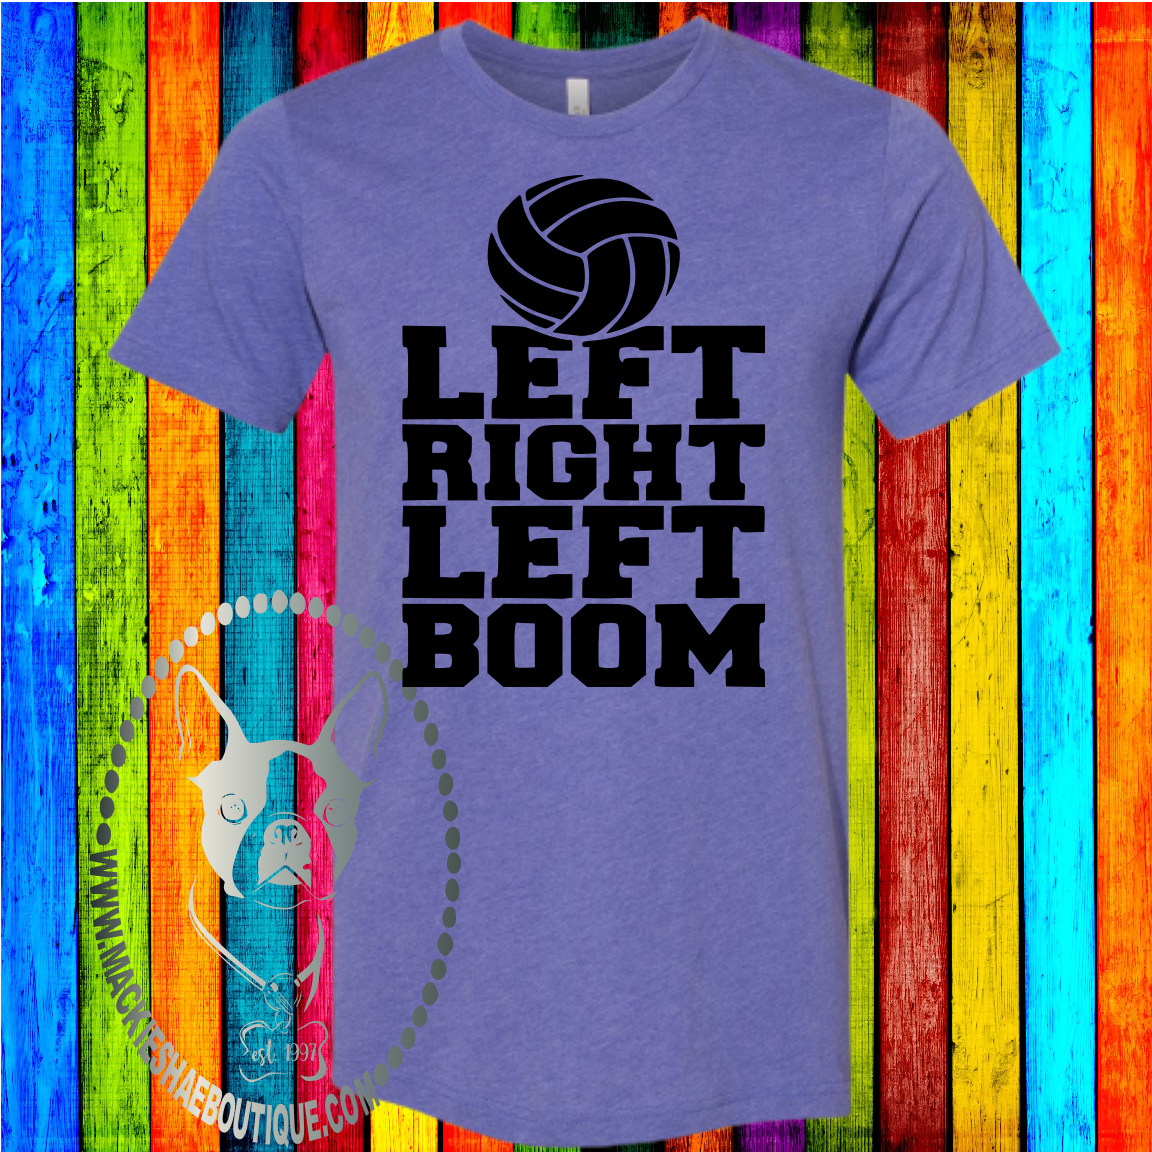 Left Right Left Boom Volleyball Custom Shirt, Short Sleeve